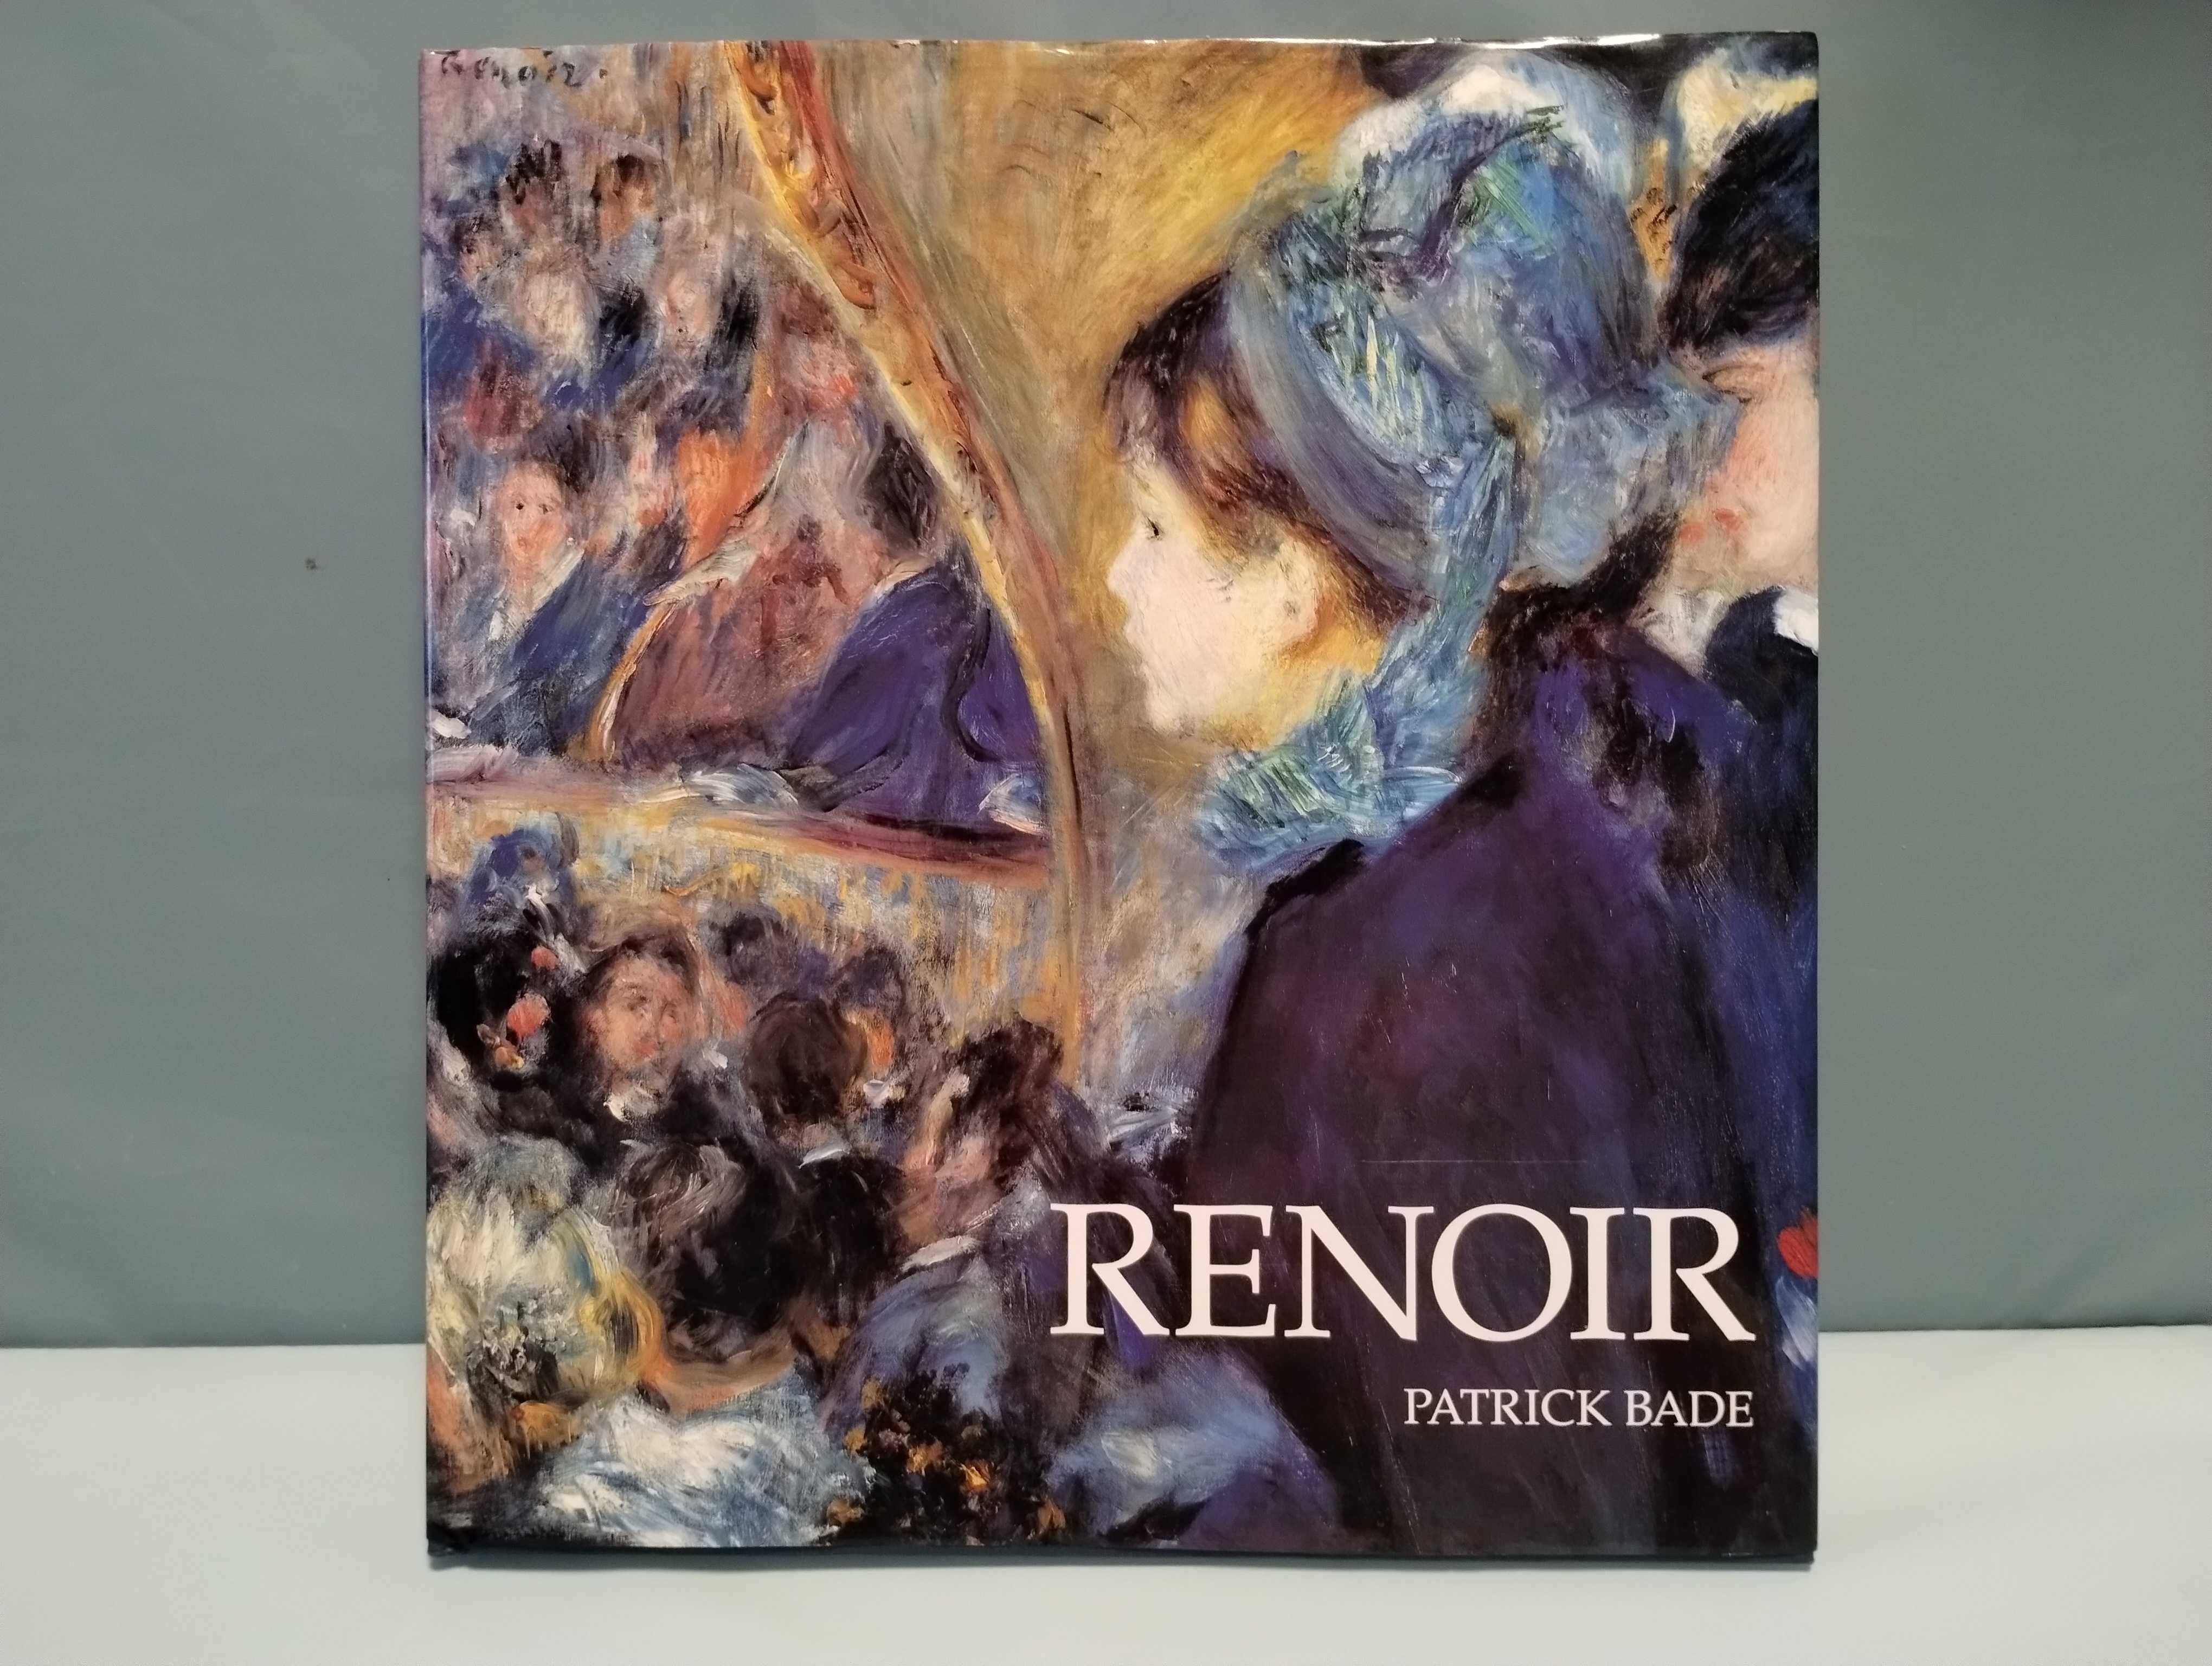 Renoir, Pierre Auguste Renoir